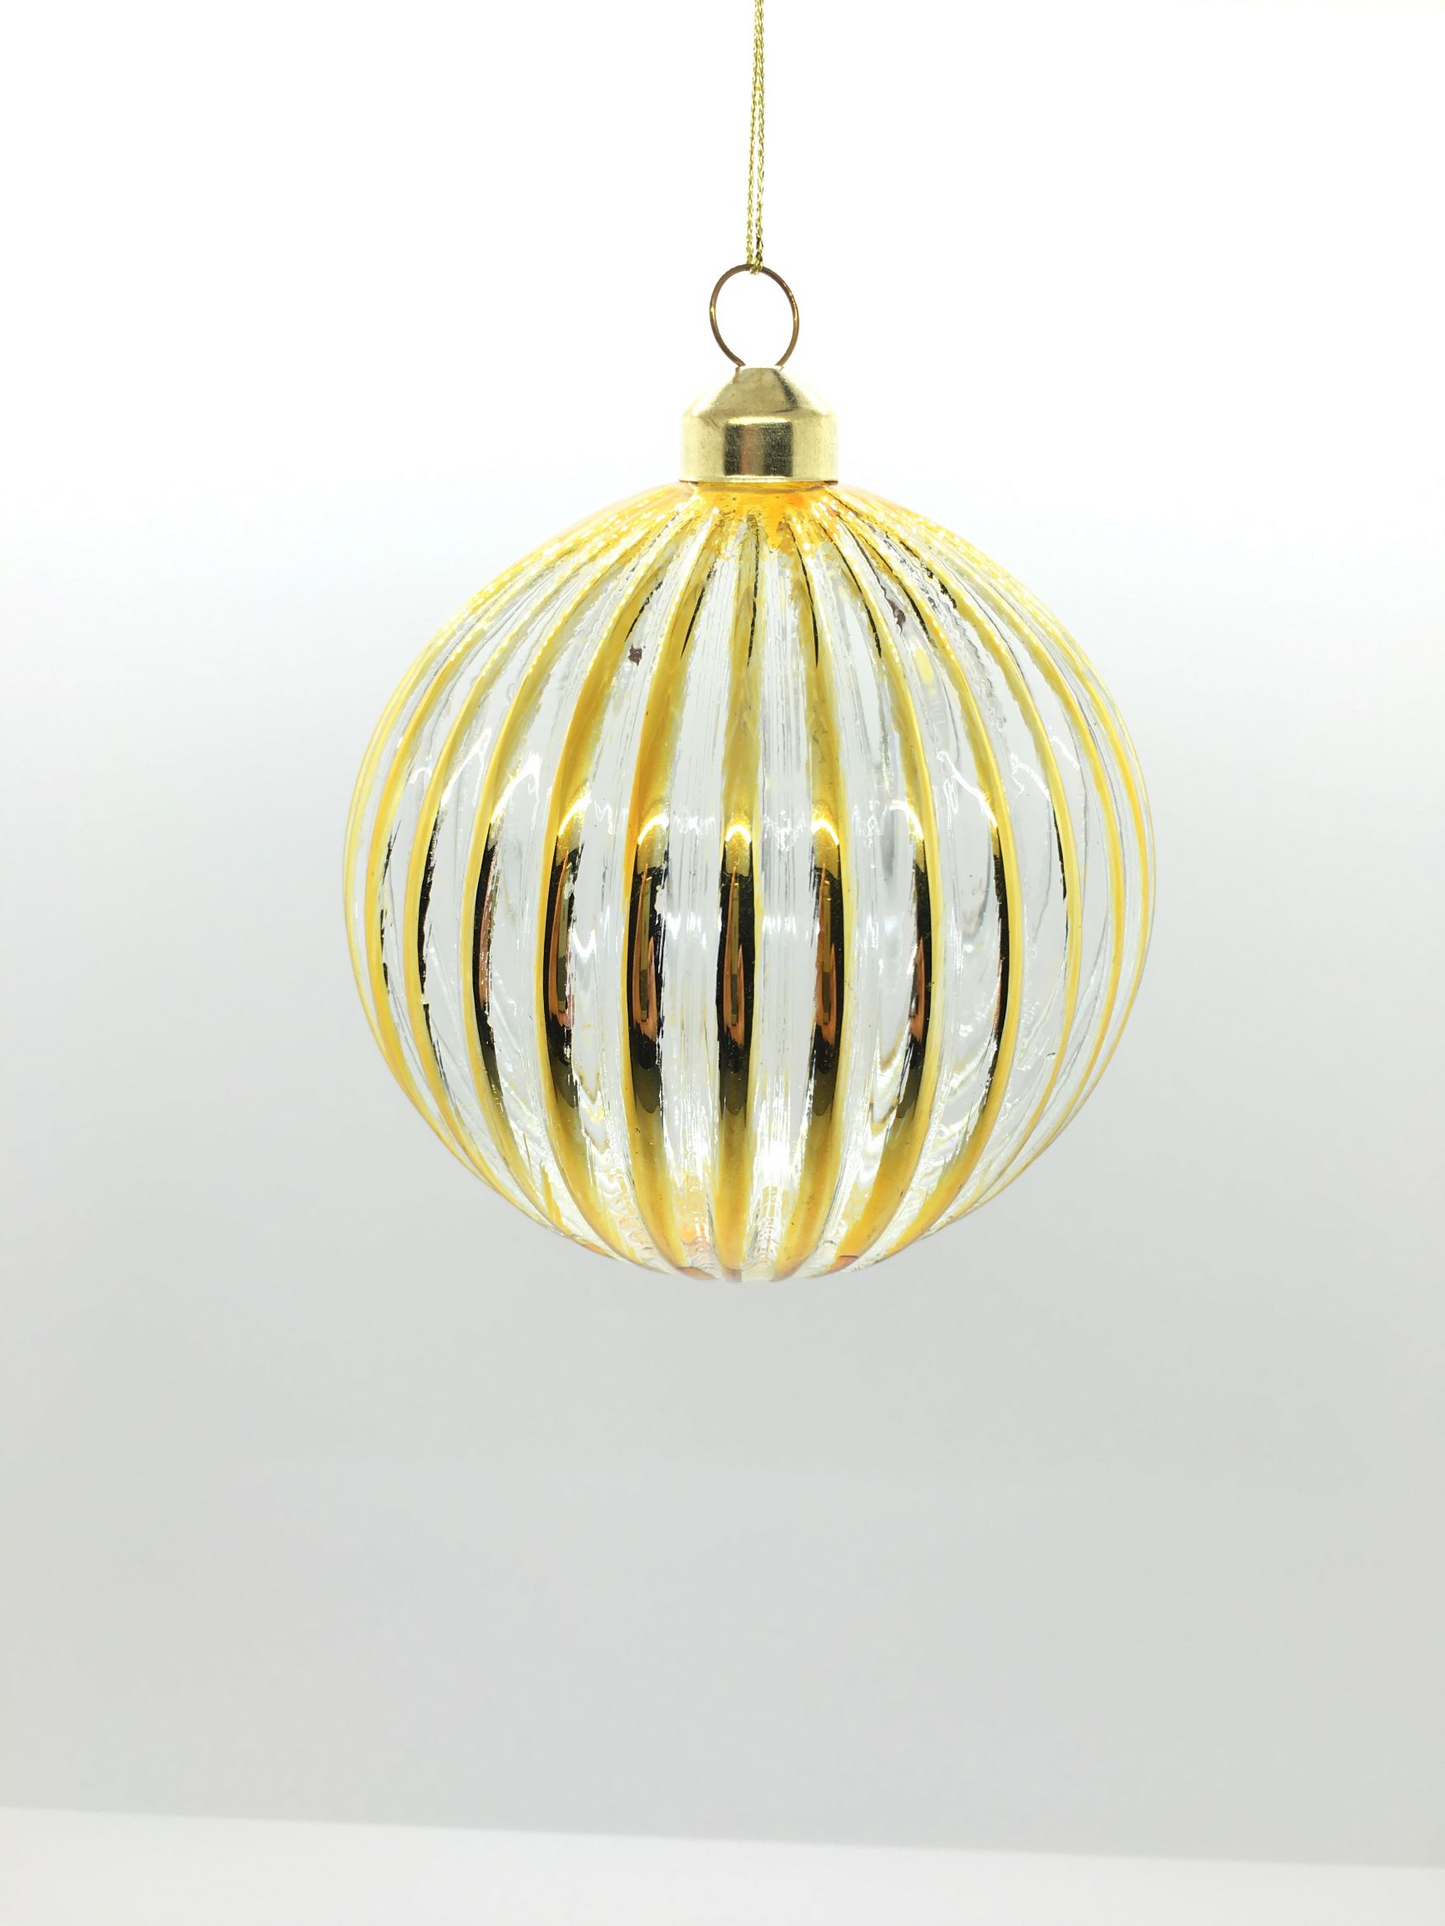 Palla in vetro decoro meridiani oro. Decorazione per albero di Natale. Dimensione: diametro cm 8.